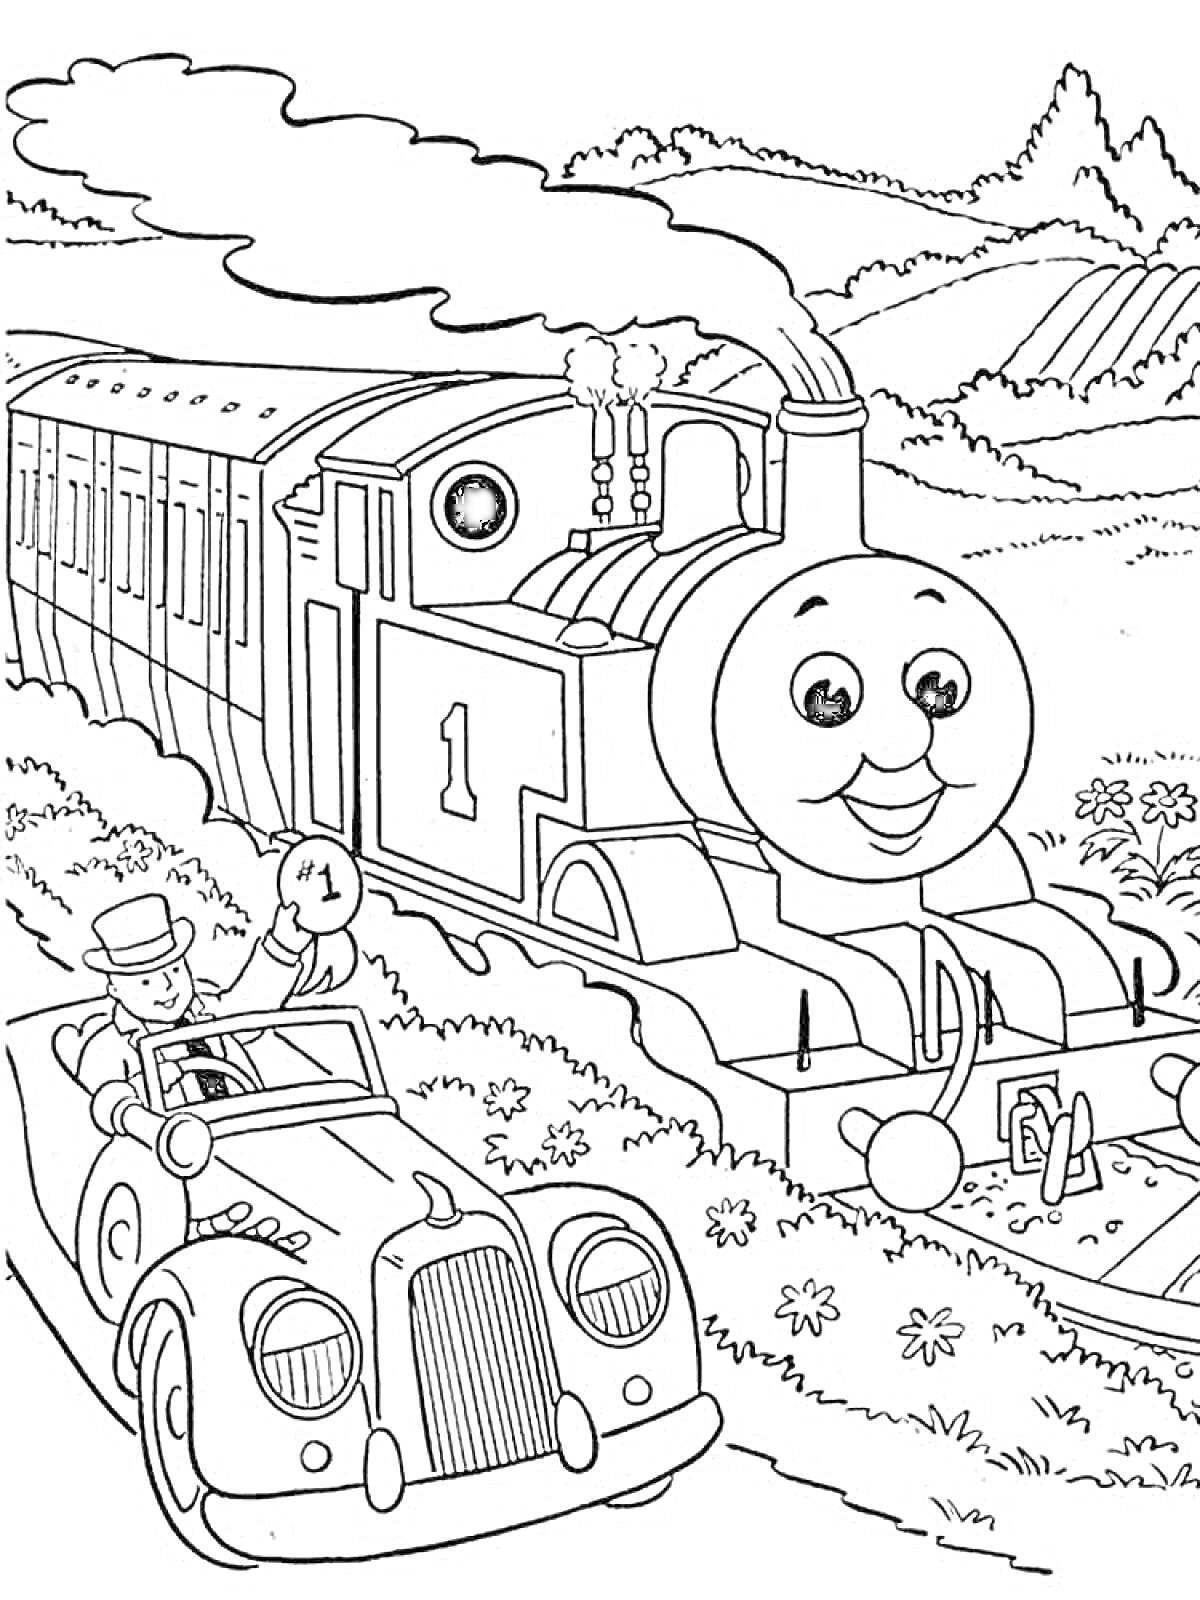 Раскраска Паровозик Томас с улыбающимся лицом едет по железнодорожным путям среди гор, рядом стоит мужчина в шляпе и костюме в автомобиле, держа знак с цифрой 1